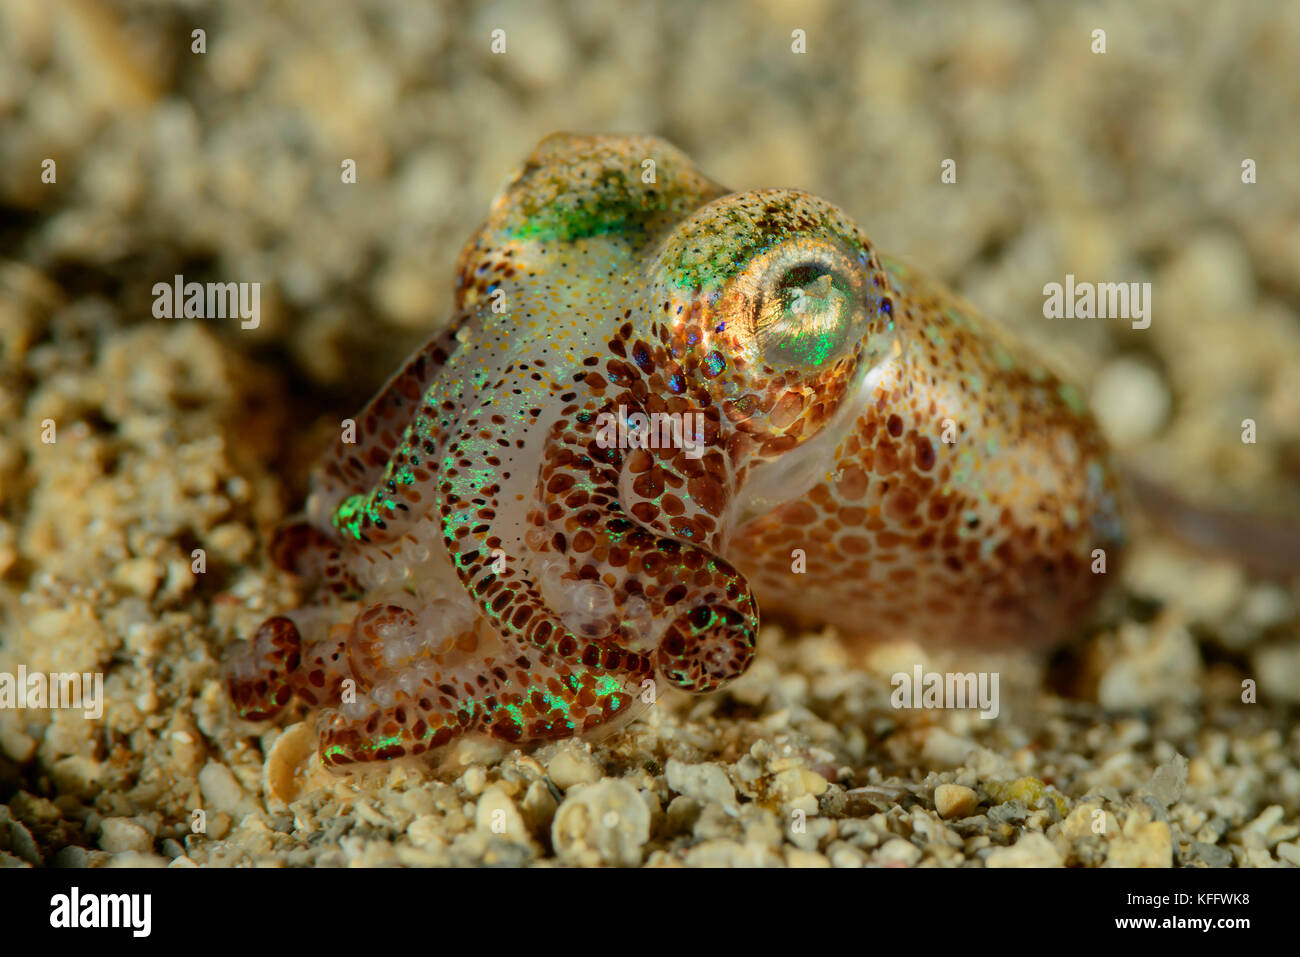 Bobtail comune calamari, sepietta oweniana, mare adriatico, mare mediterraneo, Dalmazia, Kornati, Croazia Foto Stock